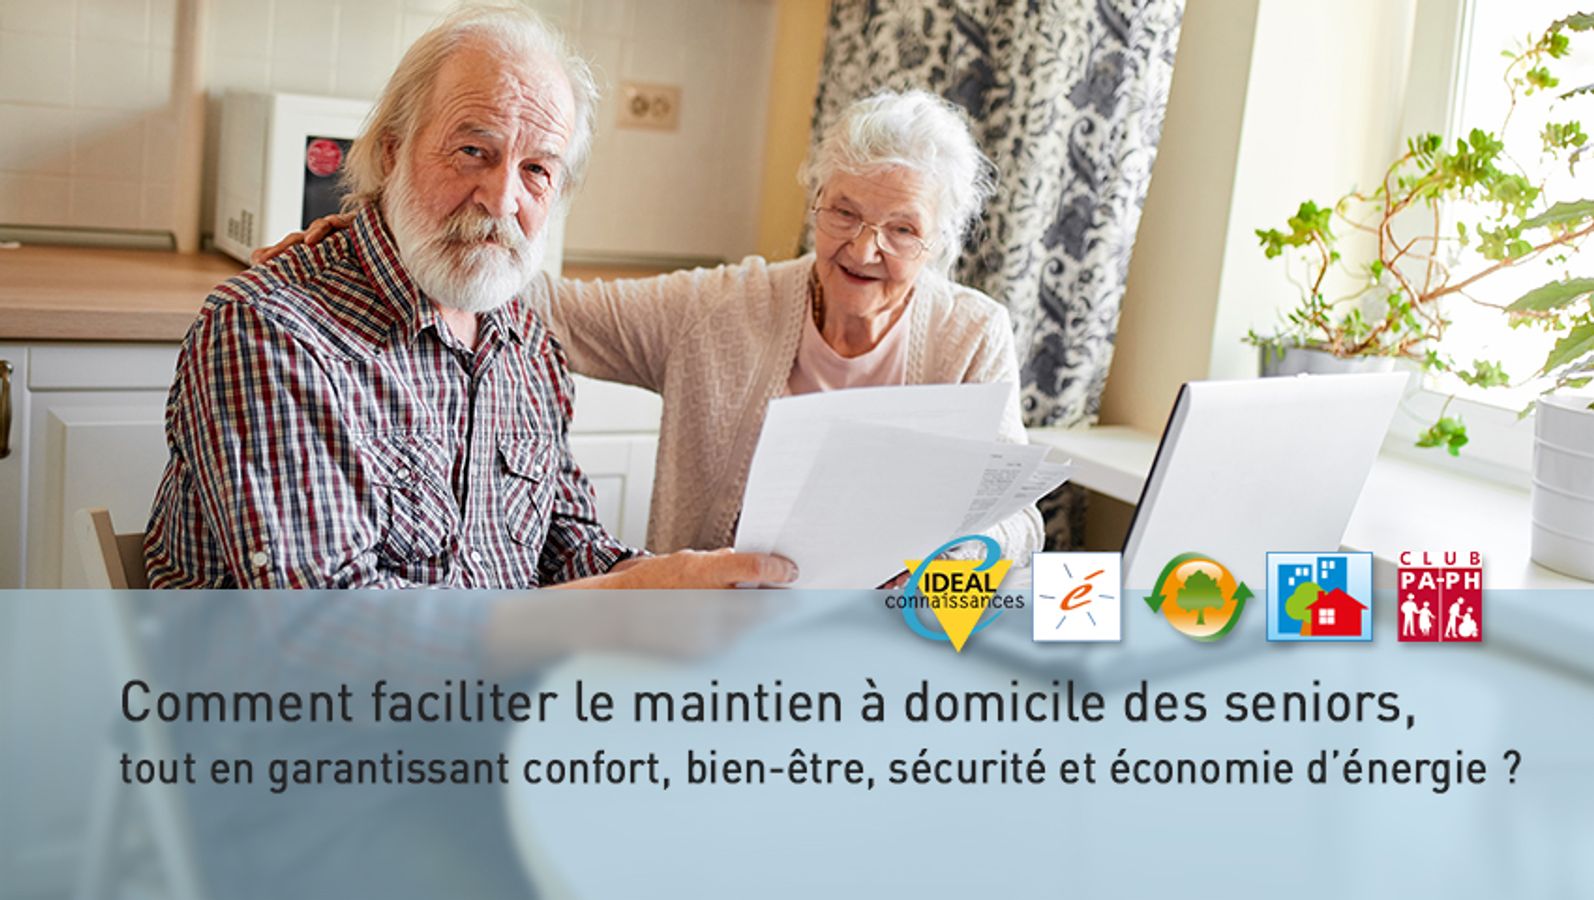 Comment faciliter le maintien à domicile des seniors, tout en garantissant confort, bien-être, sécurité et économie d’énergie ?